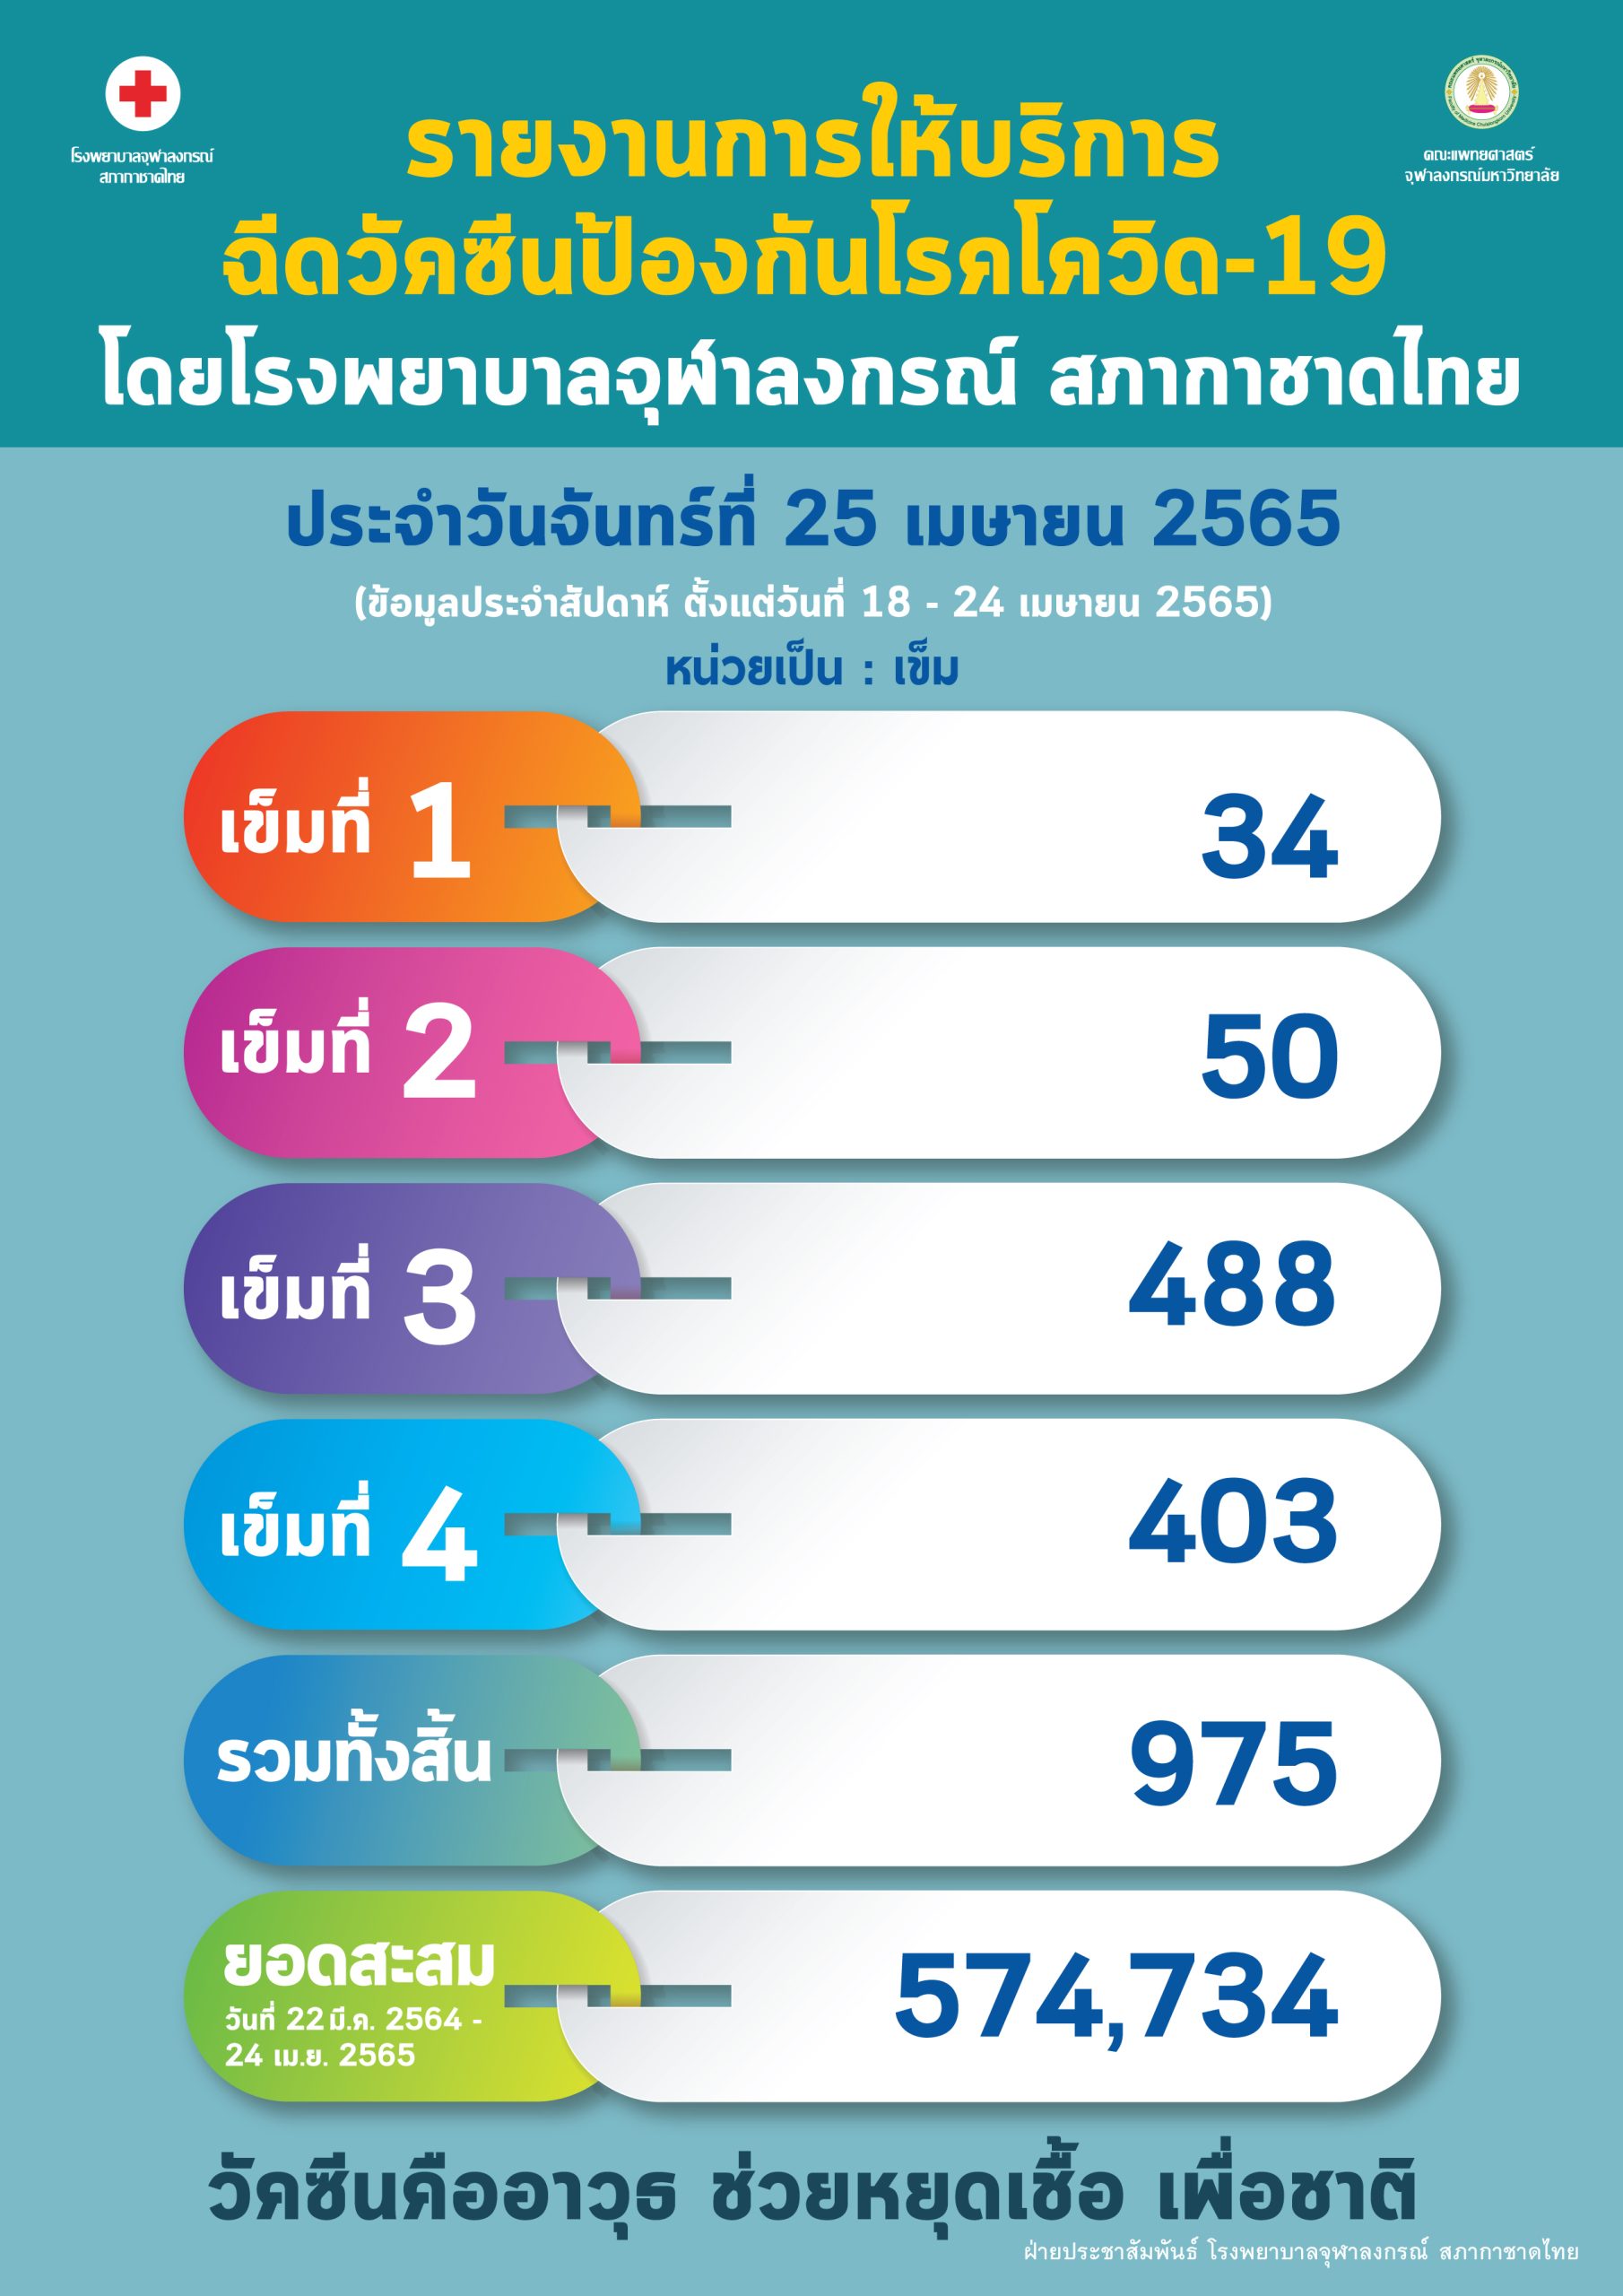 รายงานการให้บริการ ฉีดวัคซีนป้องกันโรคโควิด-19 โดยโรงพยาบาลจุฬาลงกรณ์ สภากาชาดไทย ประจำวันจันทร์ที่ 25 เมษายน 2565